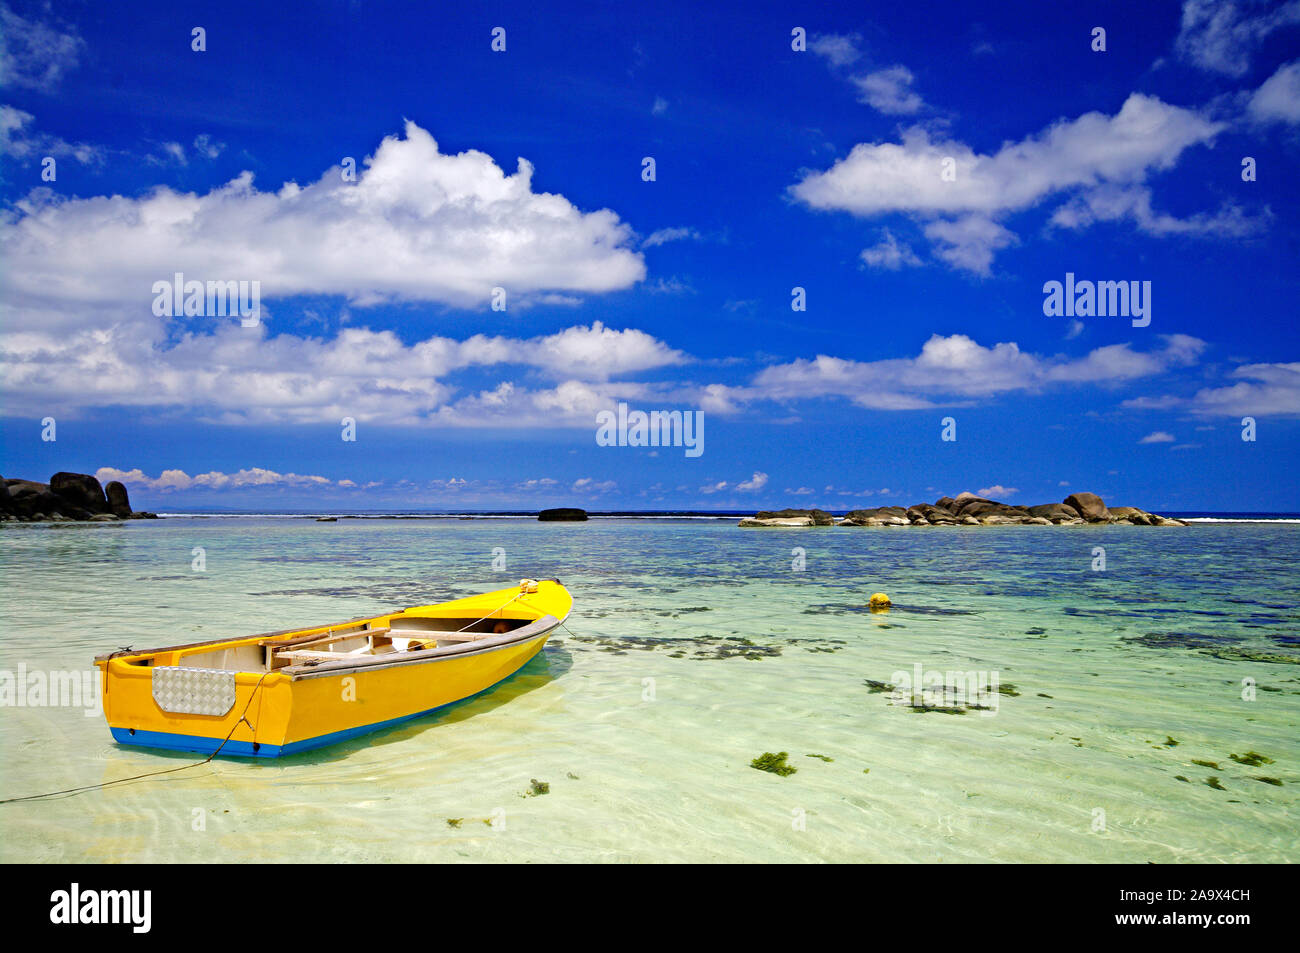 Buntes gelbes traditionelles Fischerboot am Strand der Anse Forbans, tropisches Inselparadies an der Südostküste der Hauptinsel Mahe, indischer Ozean, Foto Stock